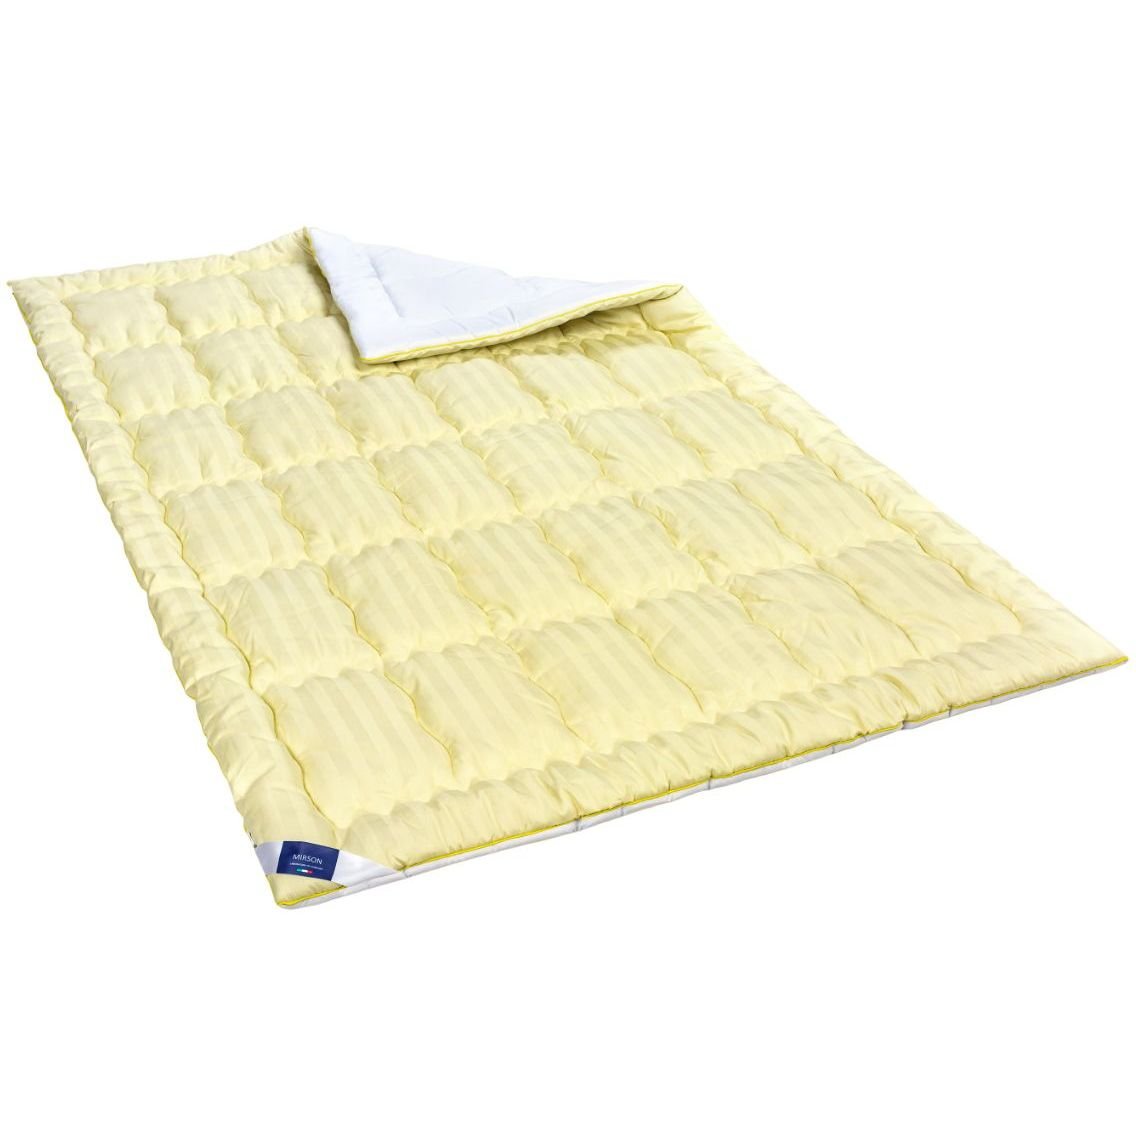 Одеяло антиаллергенное MirSon Carmela Hand Made EcoSilk №0555, зимнее, 220x240 см, желто-белое - фото 1